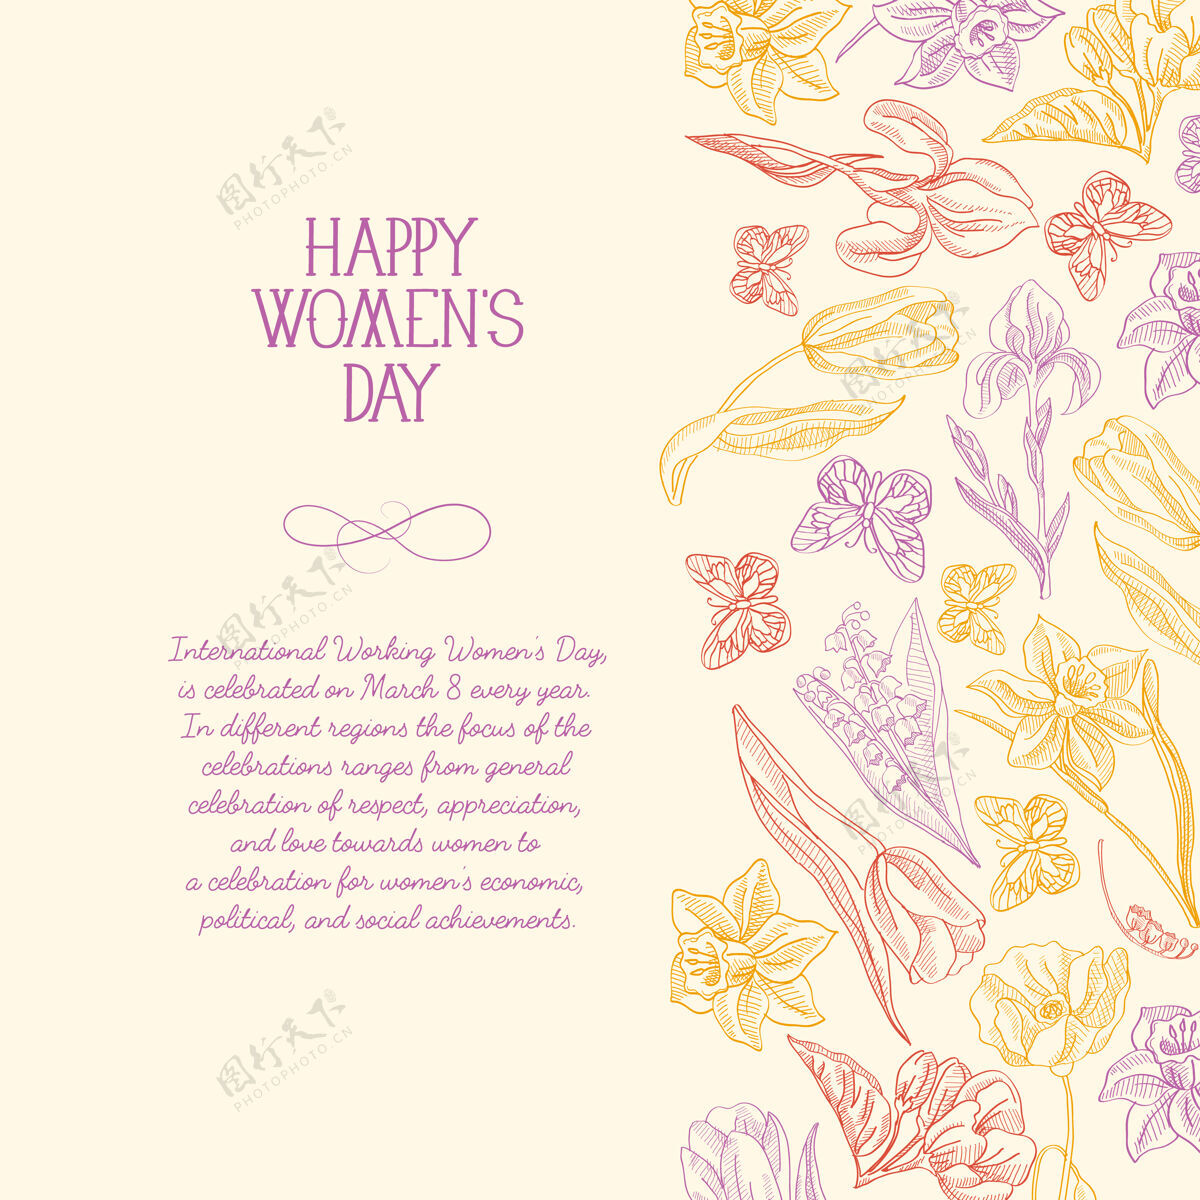 概念妇女节快乐贺卡 文字右侧有许多鲜花和问候语矢量插图时尚国际优雅